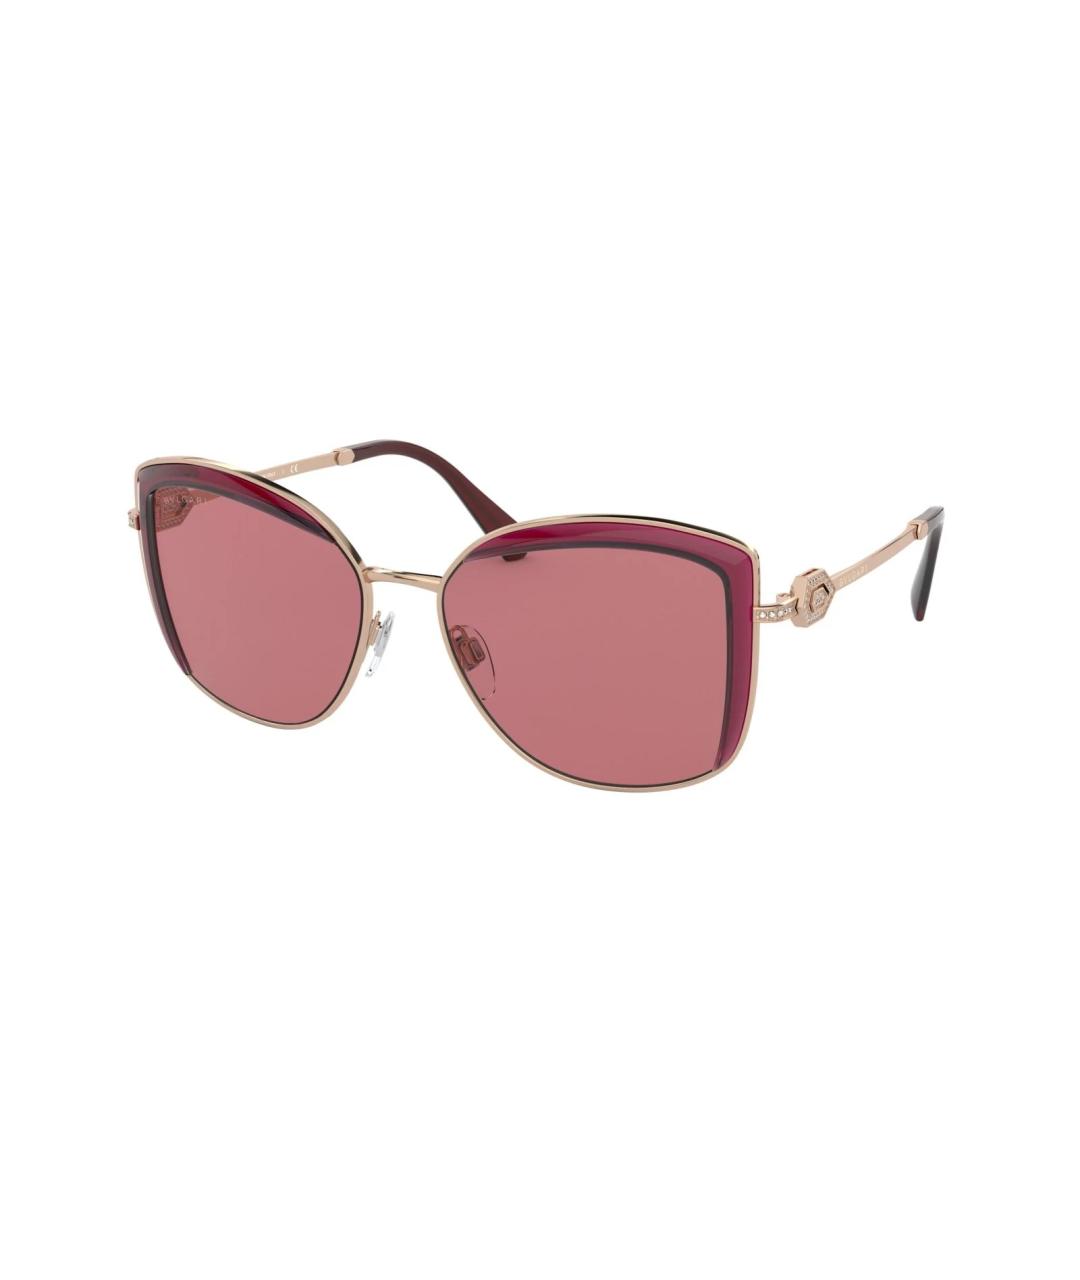 BVLGARI Розовые металлические солнцезащитные очки, фото 1